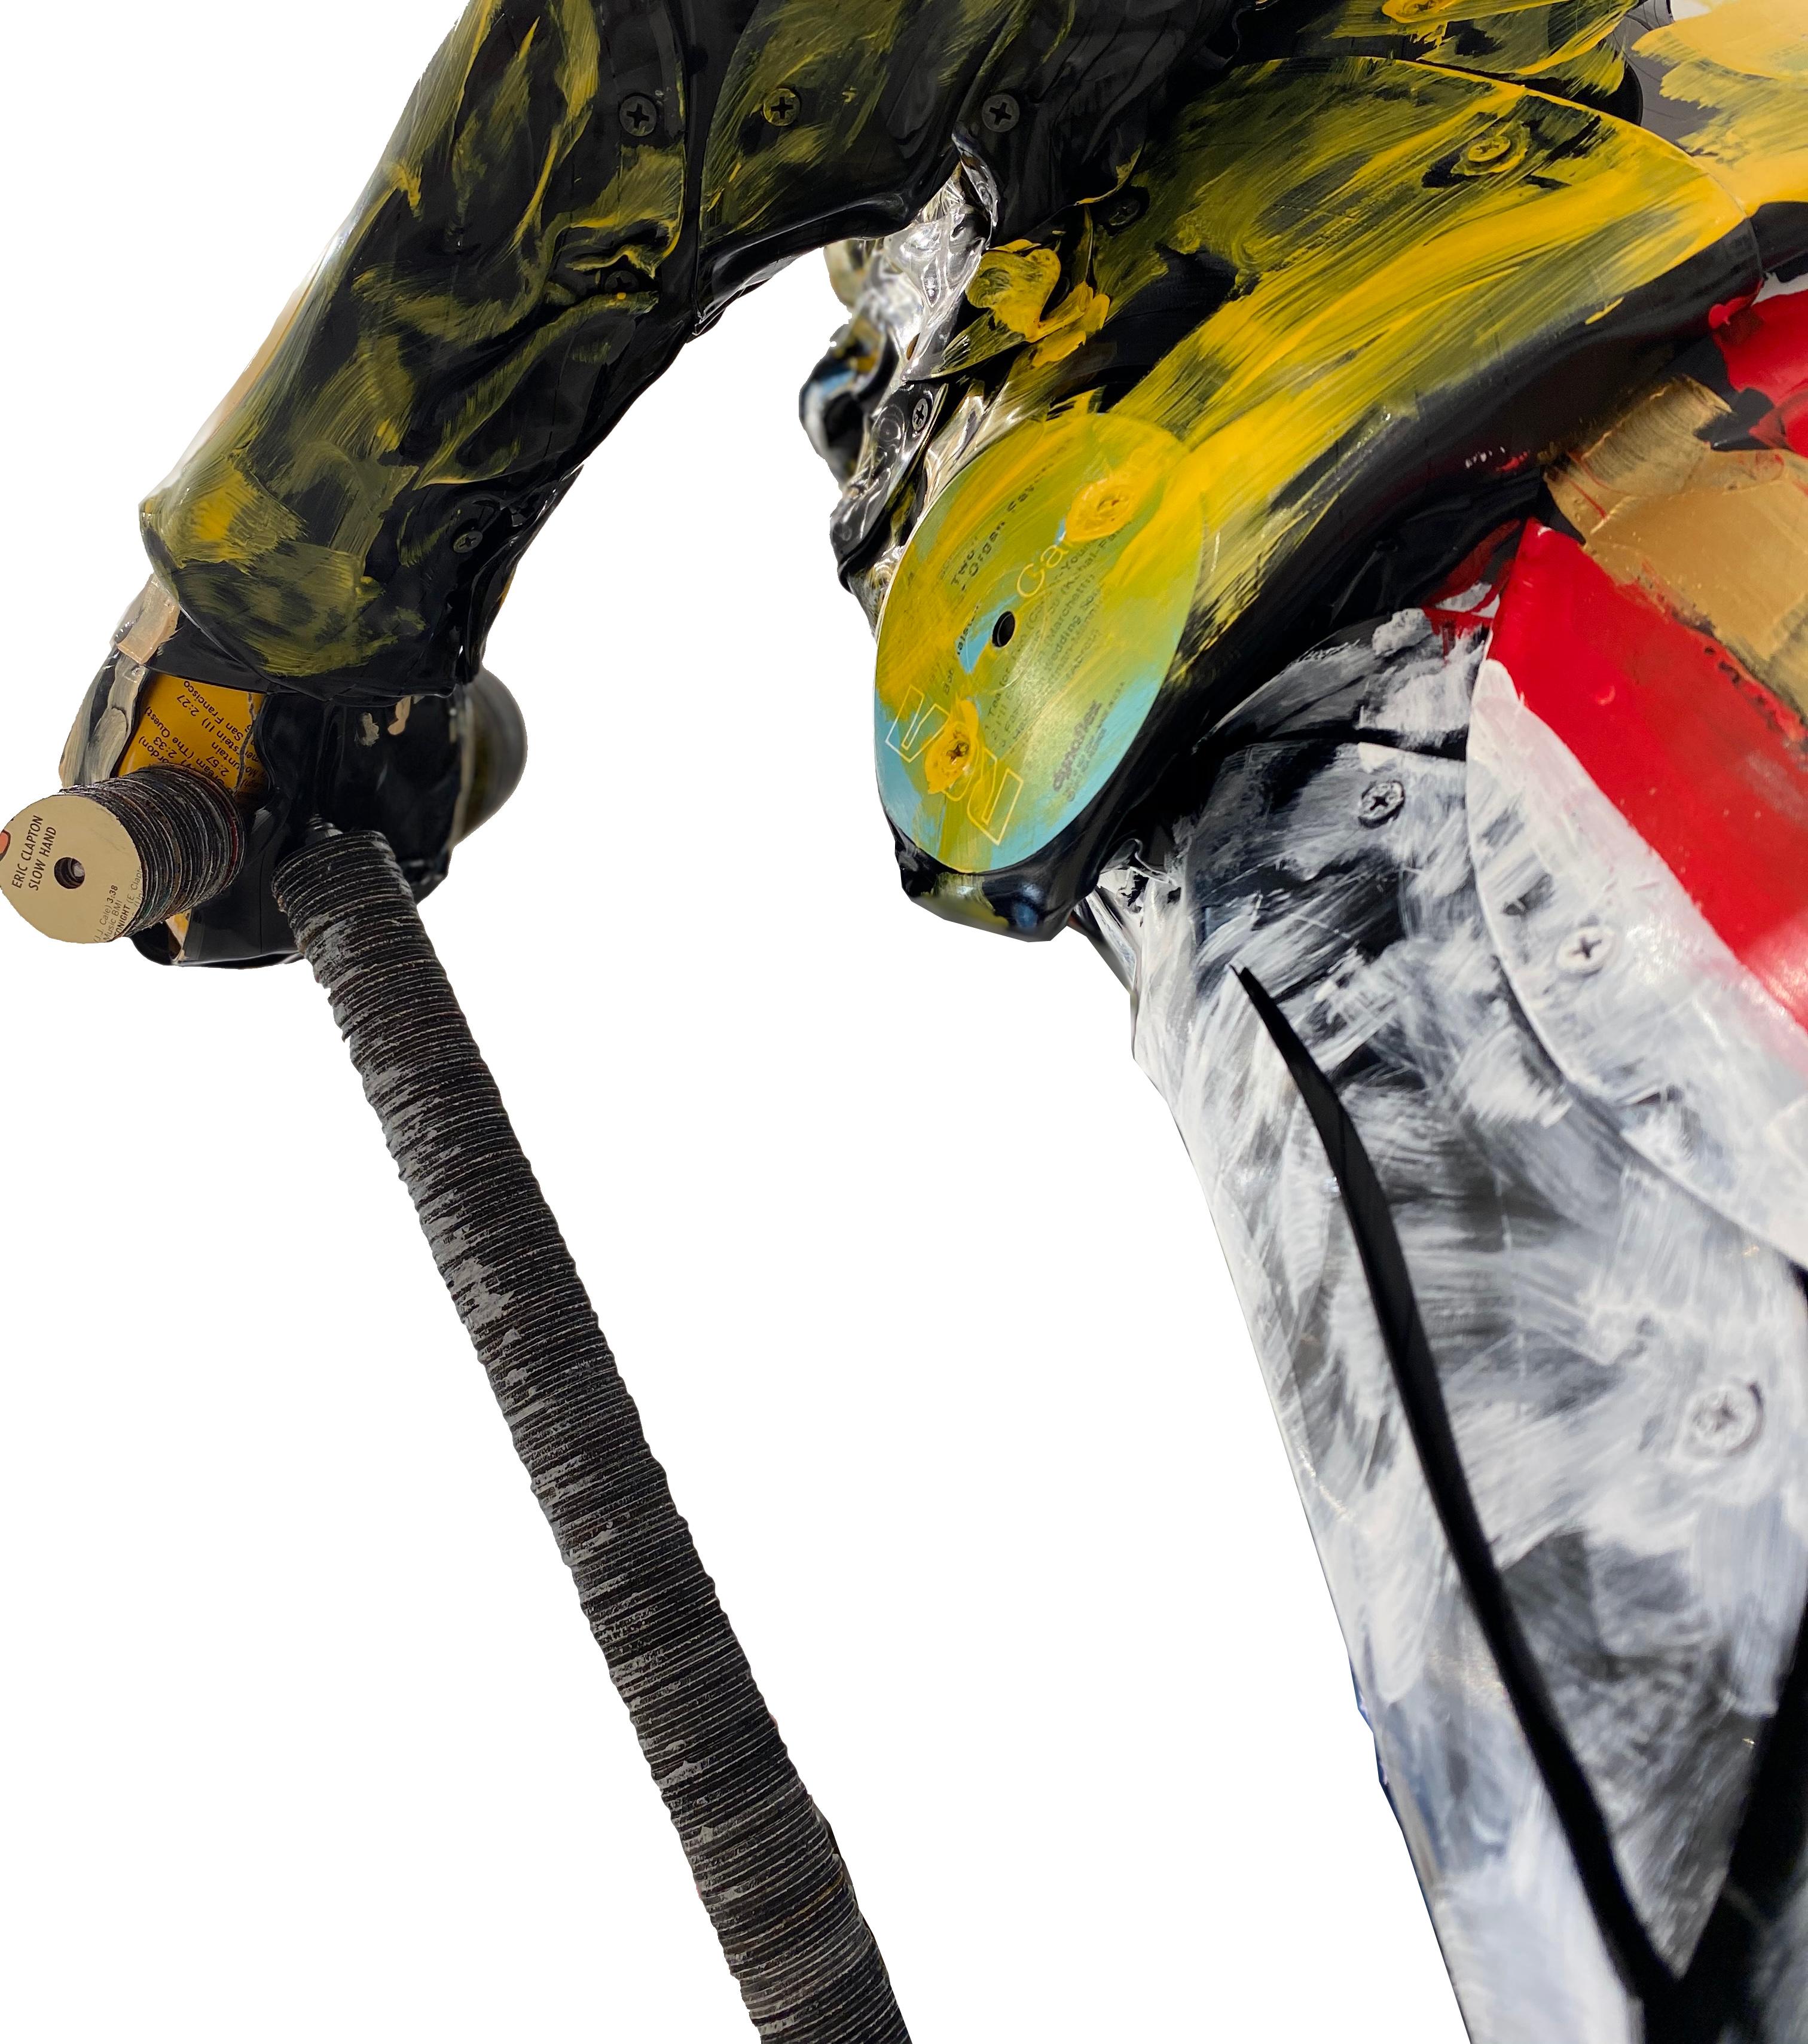 Freddie Mercury ist eine einzigartige Skulptur, die der belgische Künstler Georges Monfils aus Vinyl-Schallplatten geschaffen hat. 

Er verwandelt Materialien wie Schallplatten und Keyboardtasten in nachhaltige Konzepte und Kreationen, die seinen